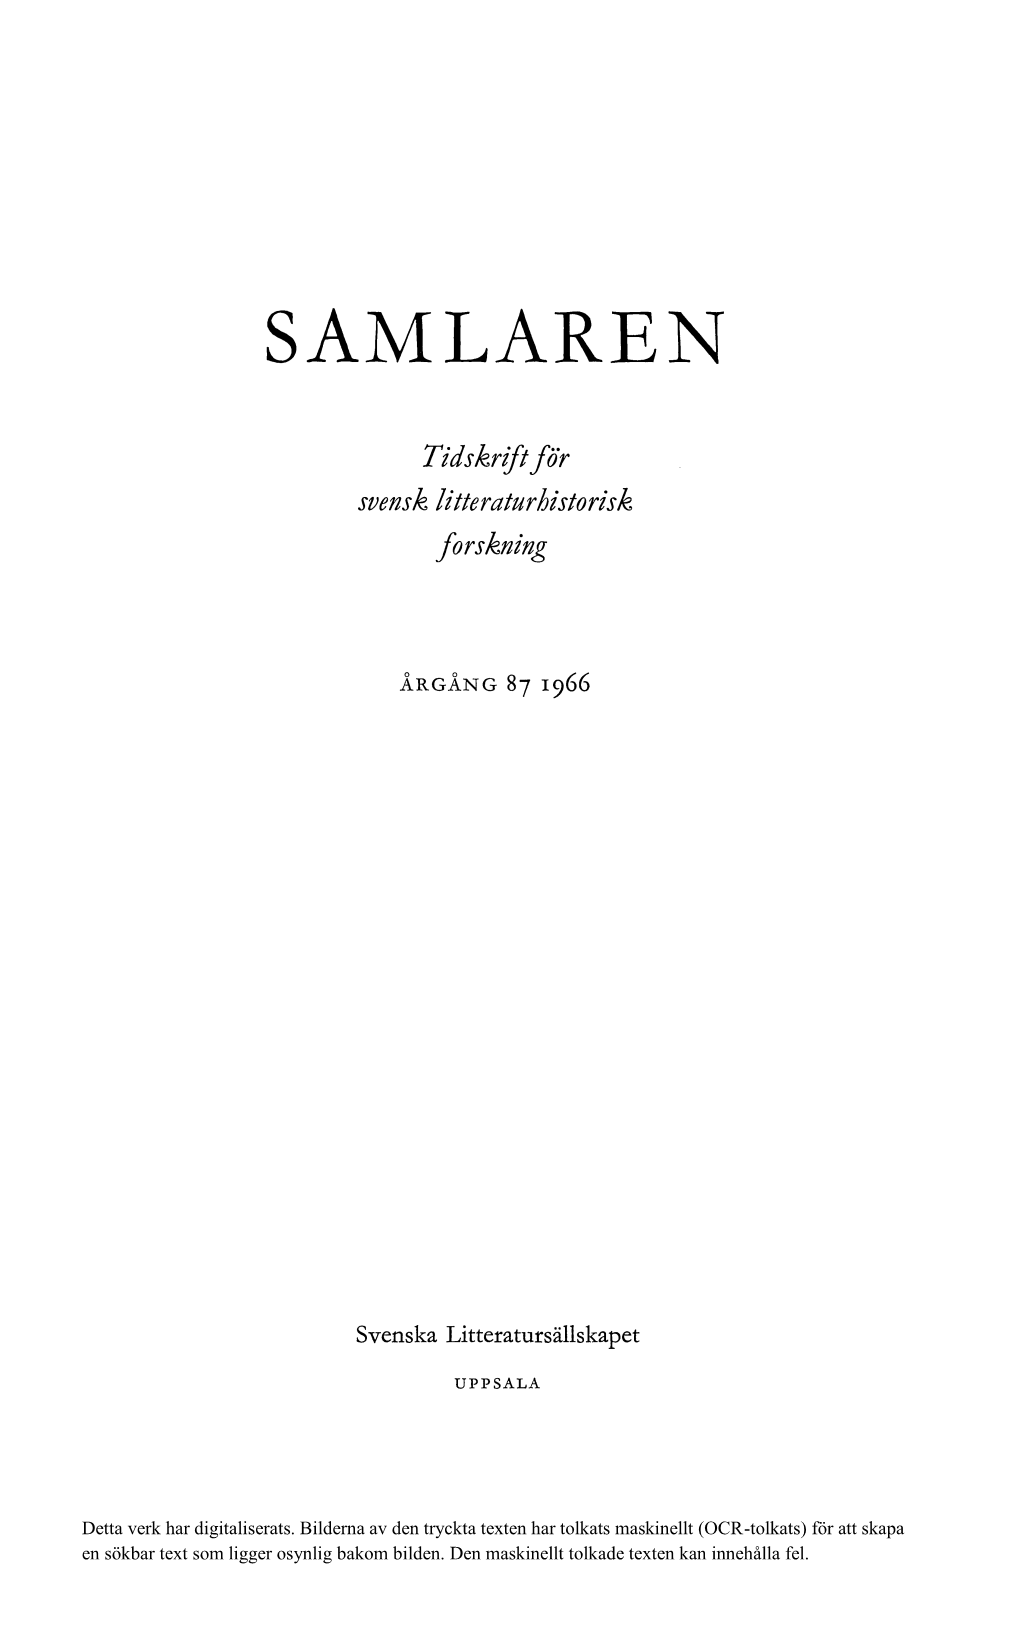 Svensk Litteraturhistorisk Bibliografi 83 (1964)